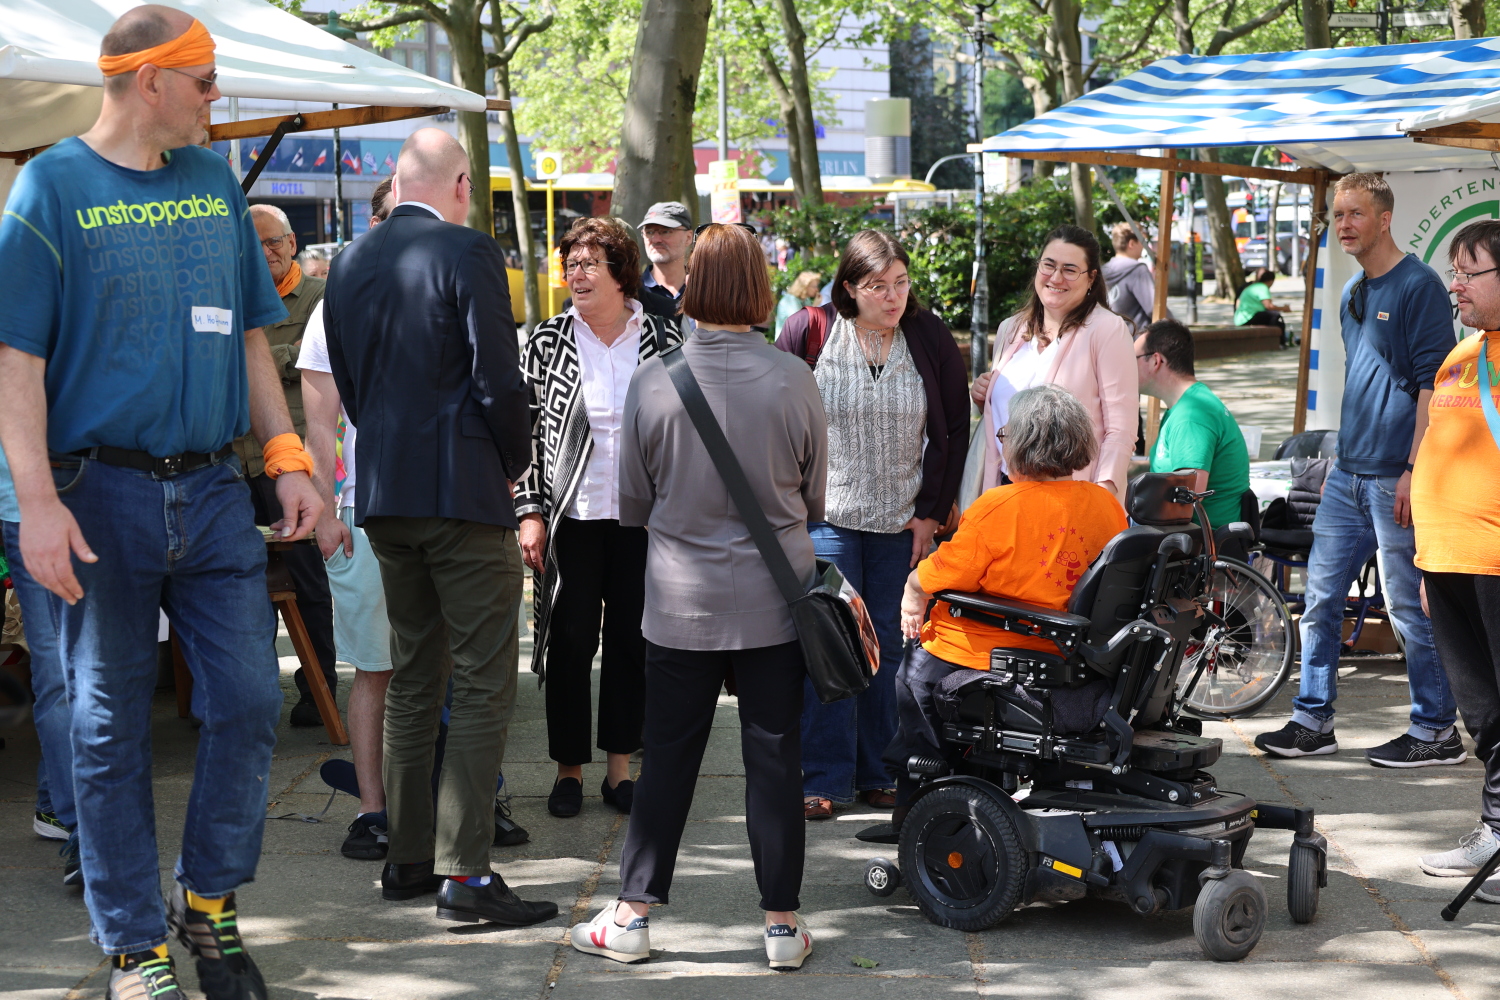 Frau Moritz (Beauftragte für Menschen mit Behinderungen) begrüßt Vertreterinnen und Vertreter des Bezirksamtes Steglitz-Zehlendorf